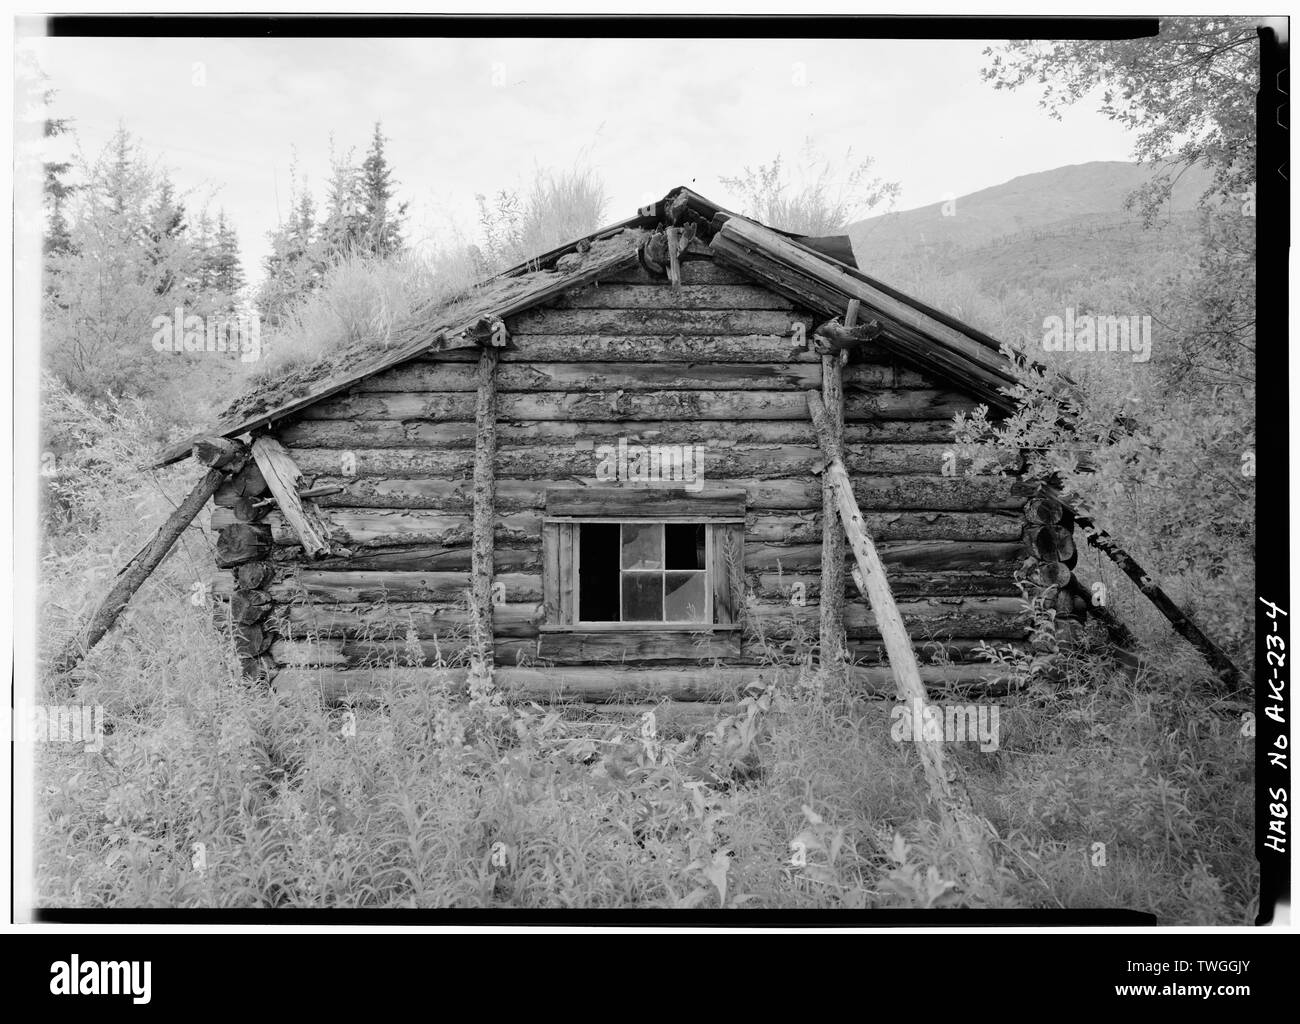 Posteriore, guardando ad ovest - James Minano Cabin, Ardesia Creek al fiume Koyukuk, Bettles prossimità, Coldfoot, Yukon-Koyukuk Area di censimento, AK Foto Stock